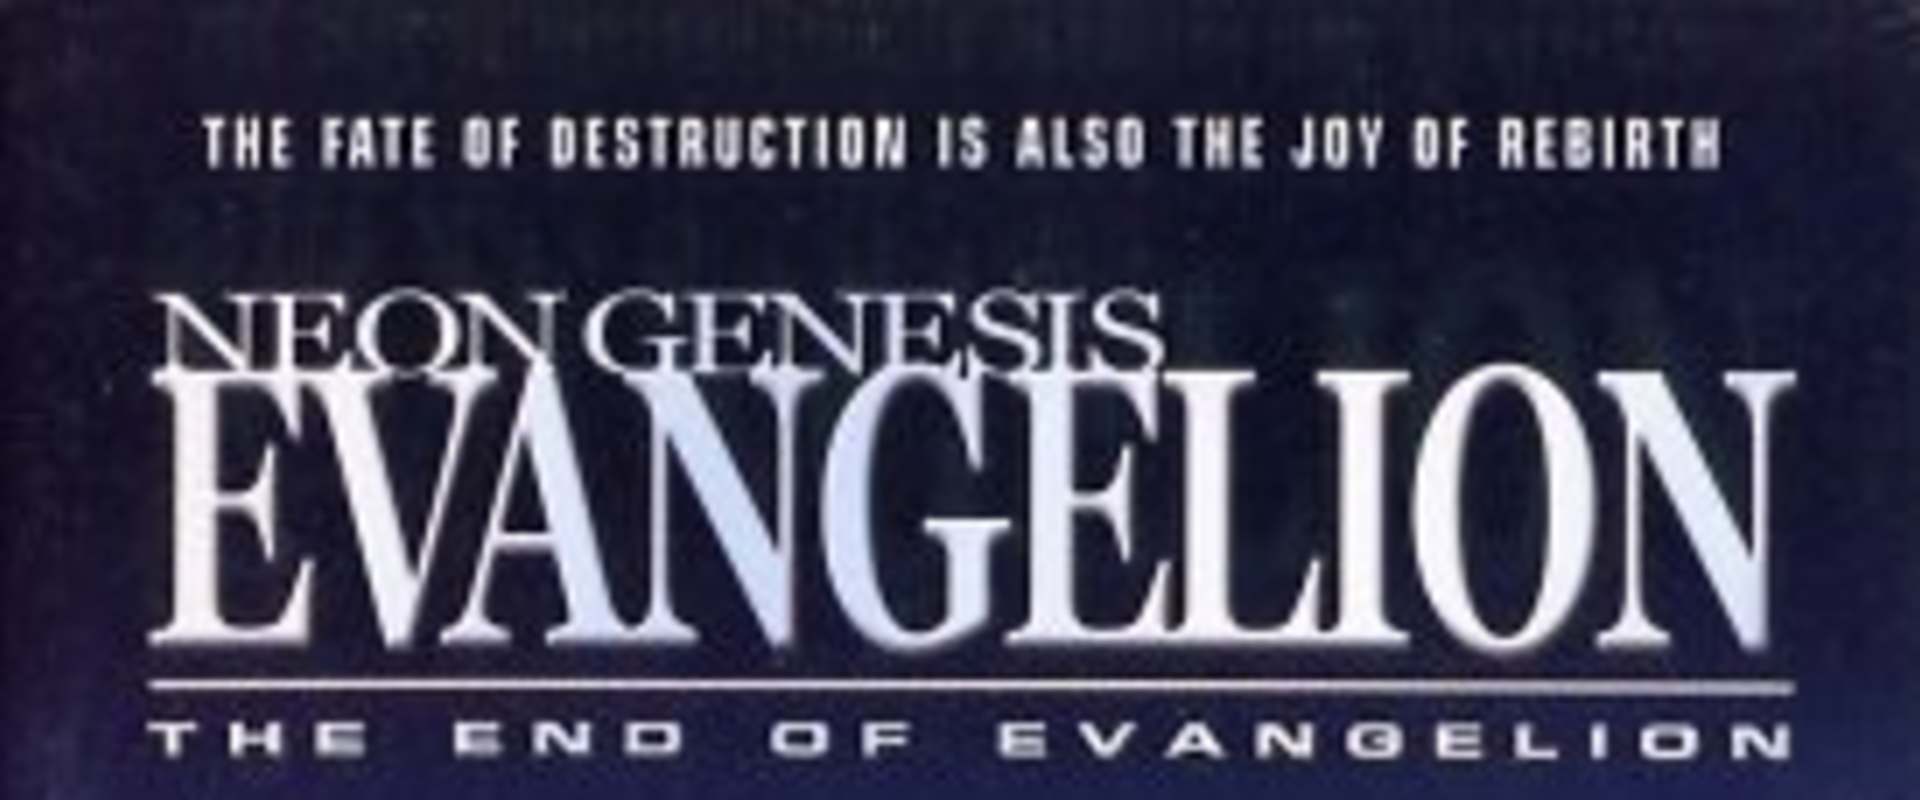 Neon Genesis Evangelion: The End of Evangelion background 2